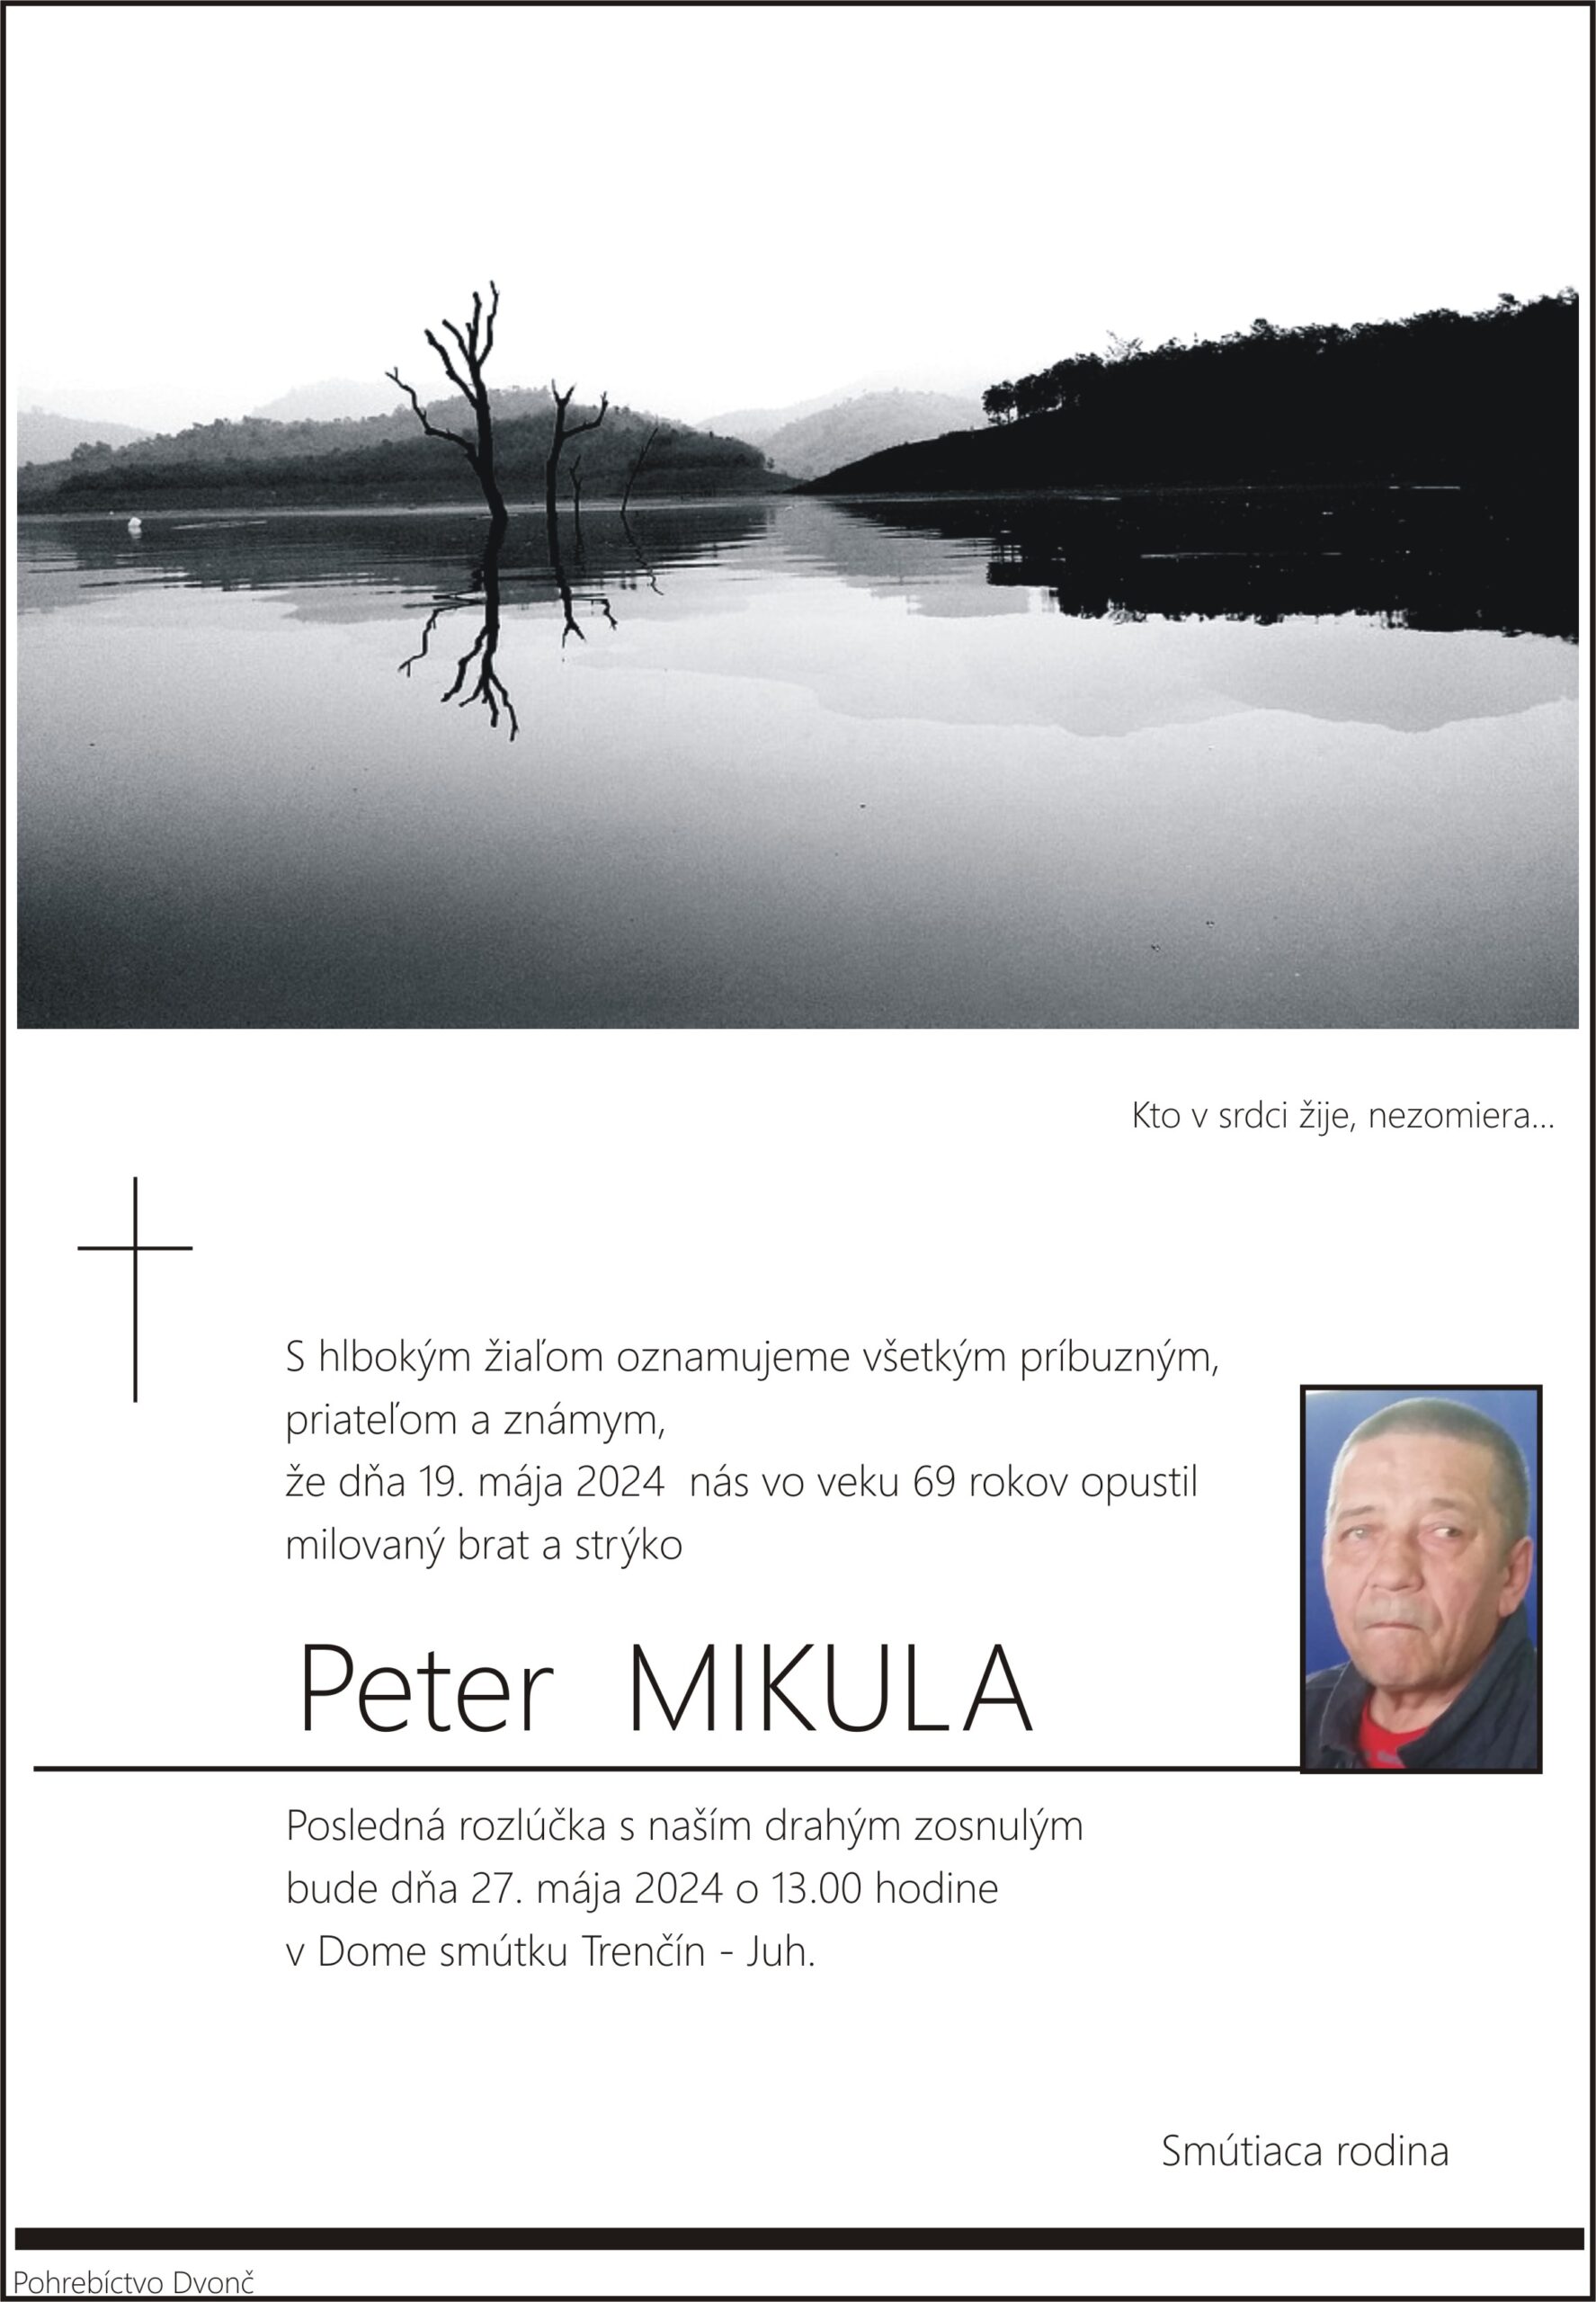 Peter Mikula